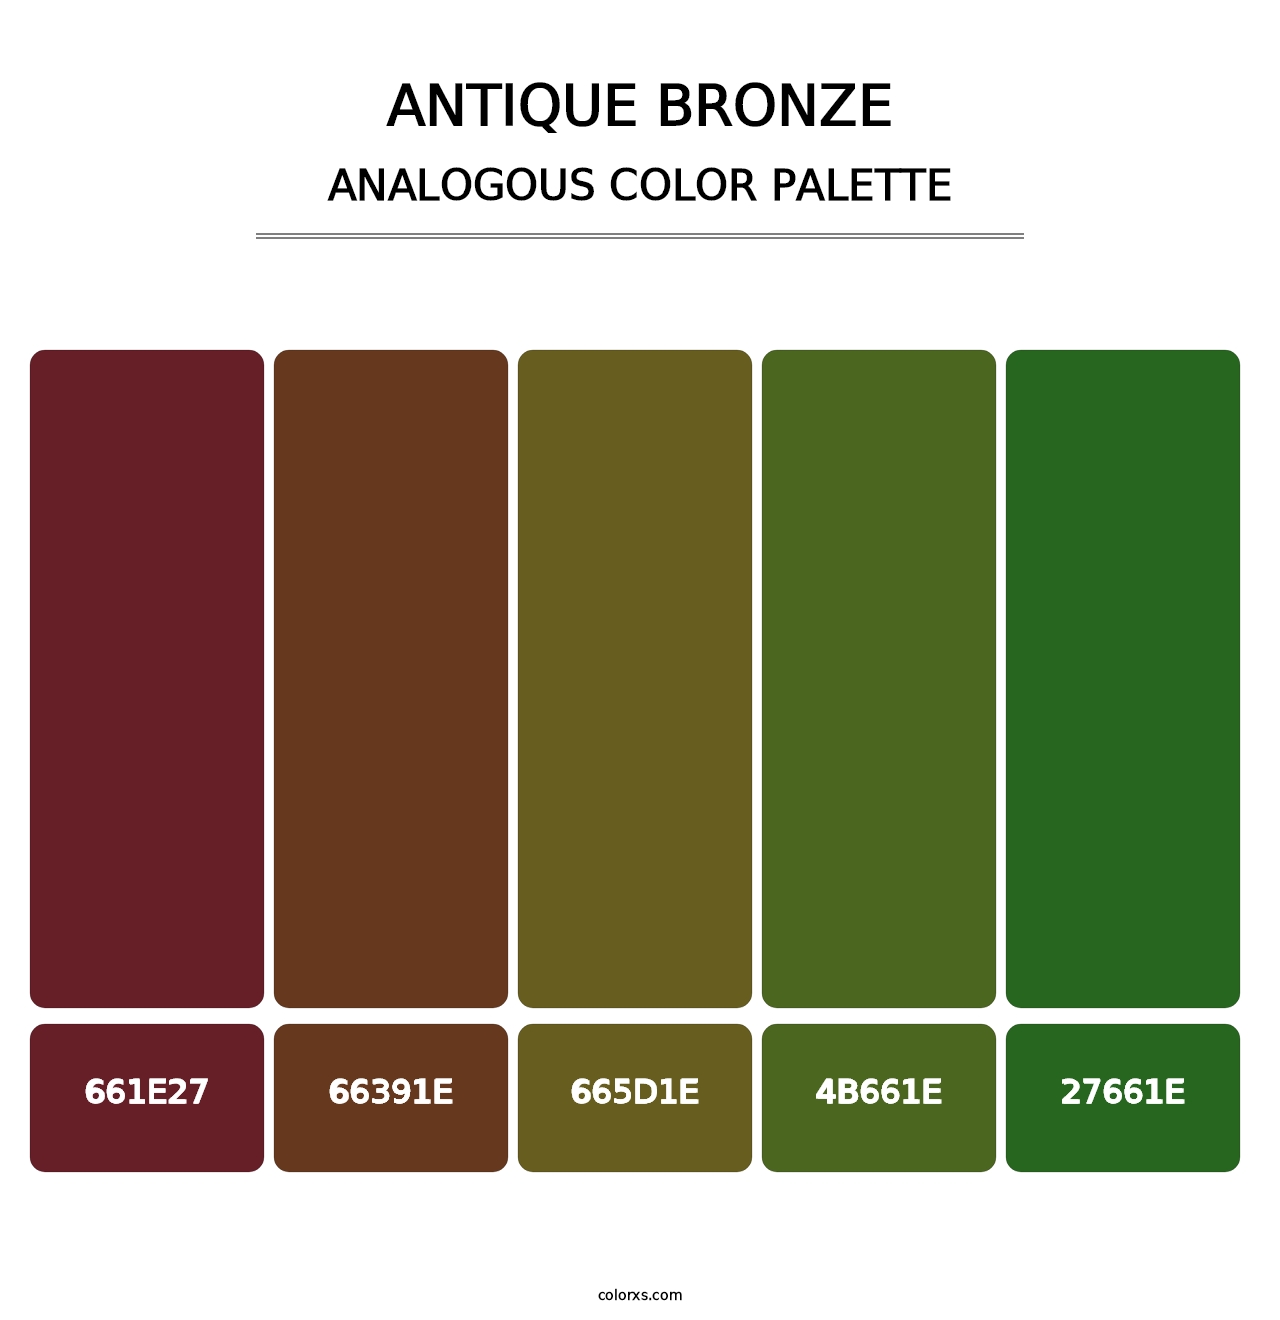 Antique Bronze - Analogous Color Palette